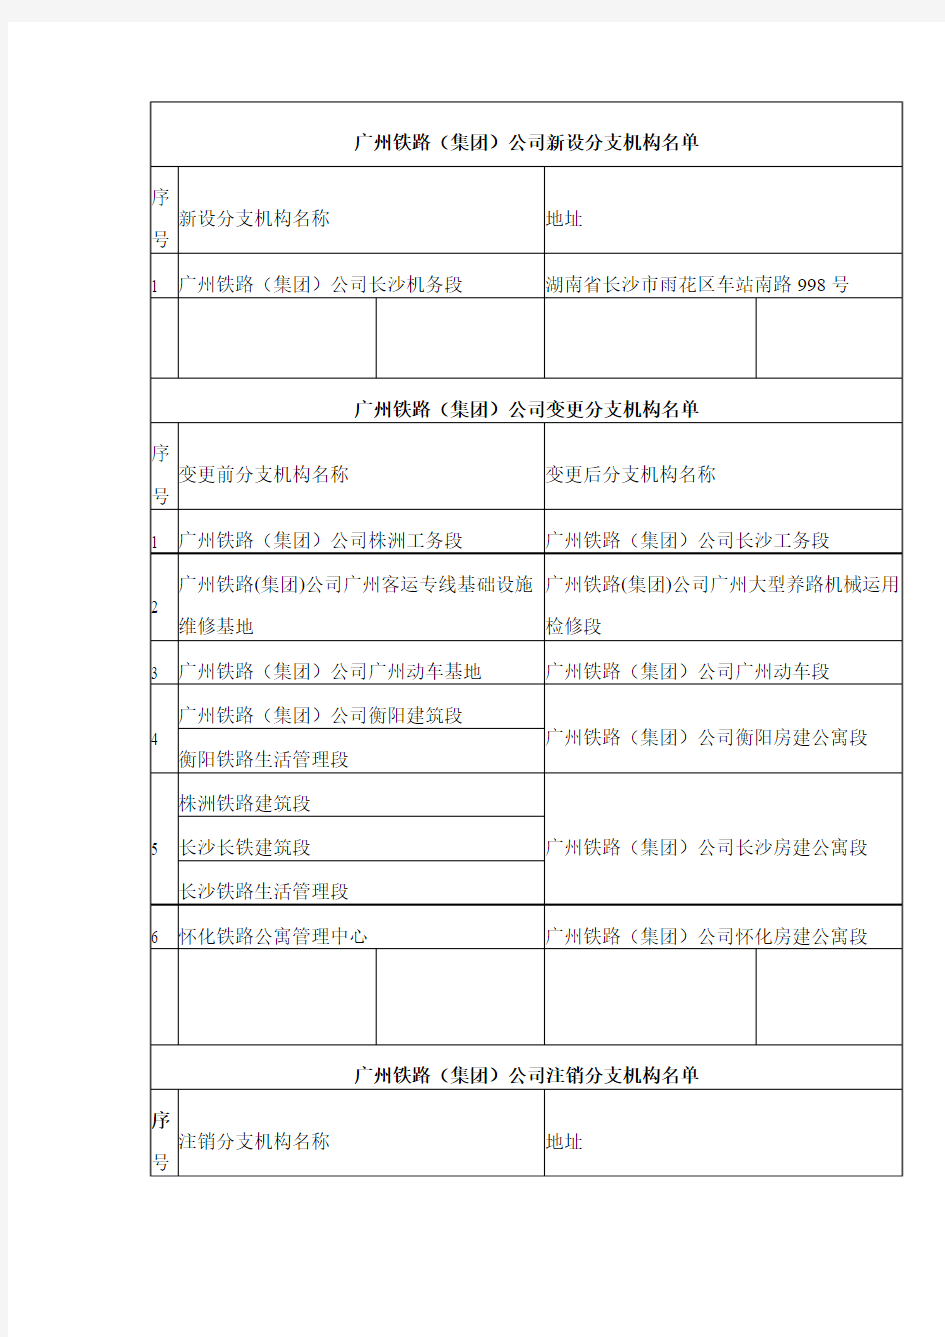 广州铁路(集团)公司新设分支机构名单